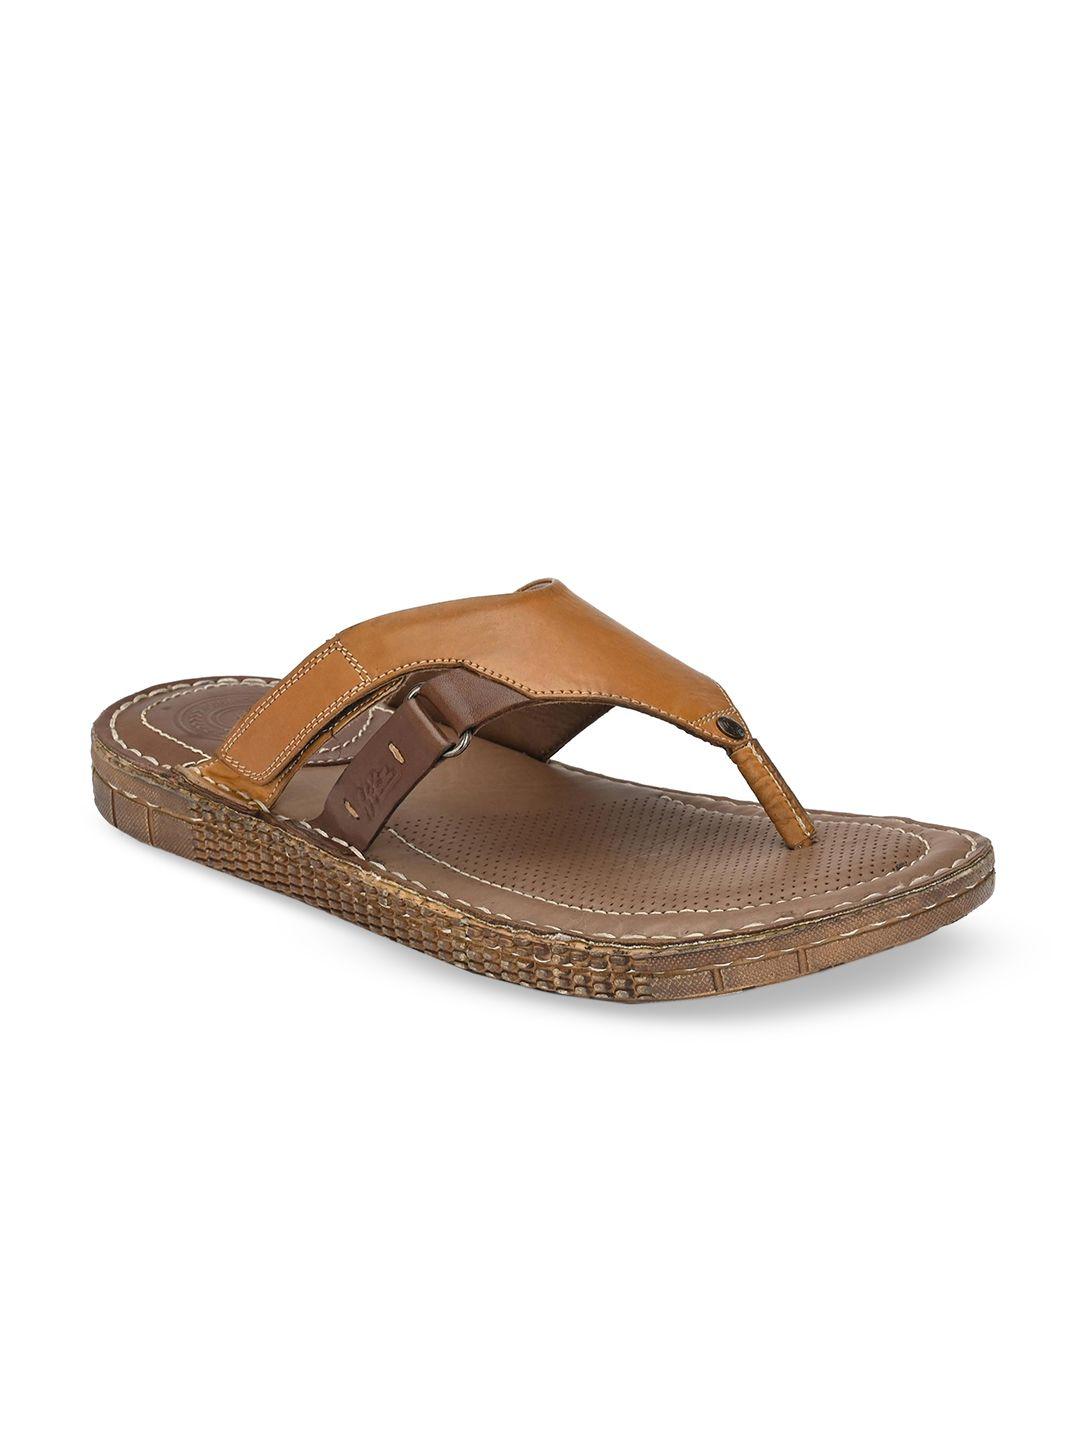 hitz-men-tan-brown-leather-comfort-sandals